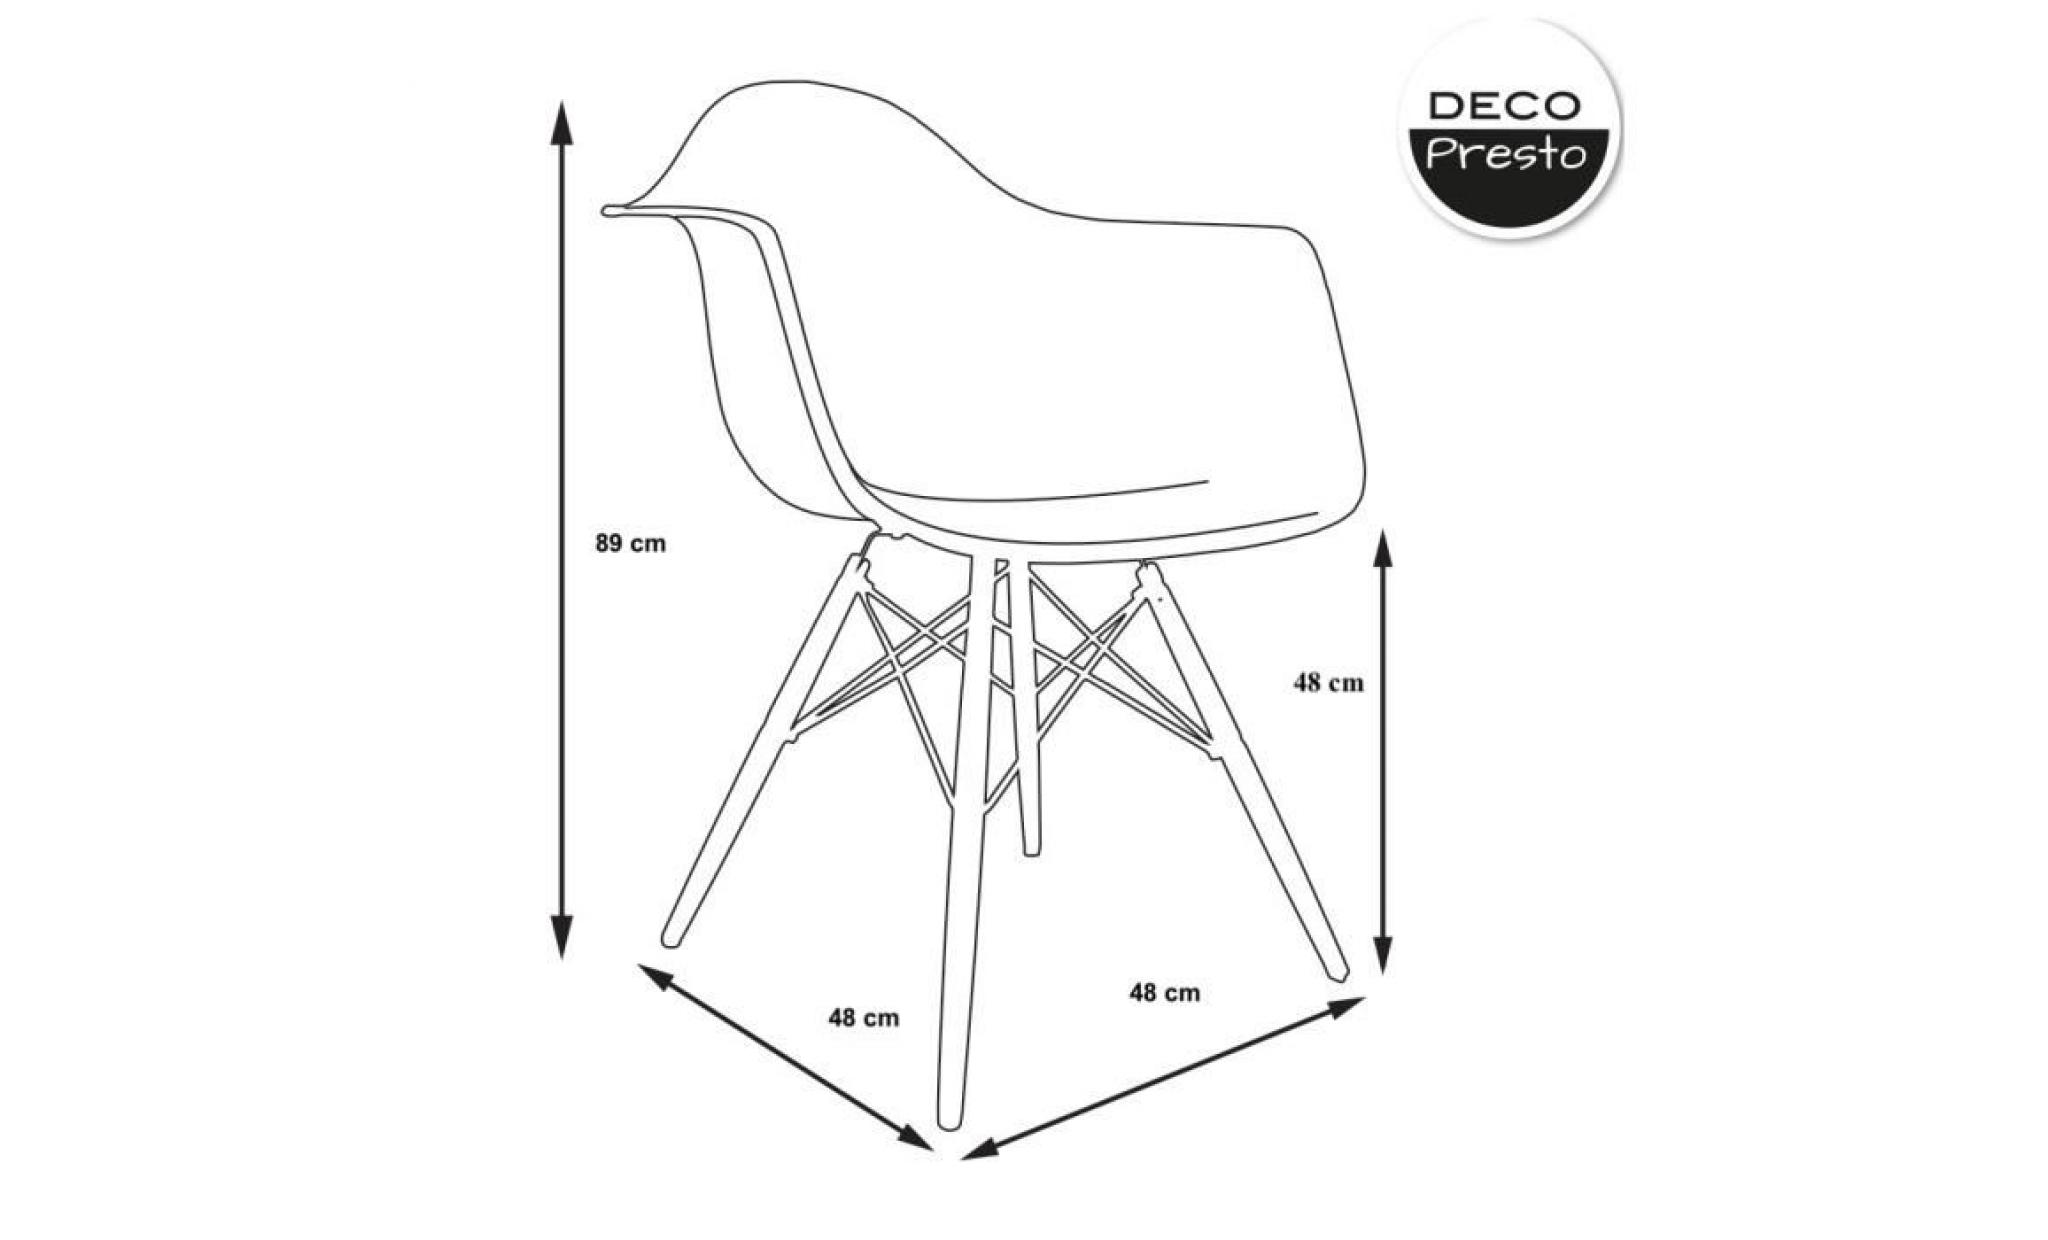 1 x fauteuil design scandinave haut. 48 cm blanc pieds: bois naturel decopresto dp dawl48 wh 1 pas cher